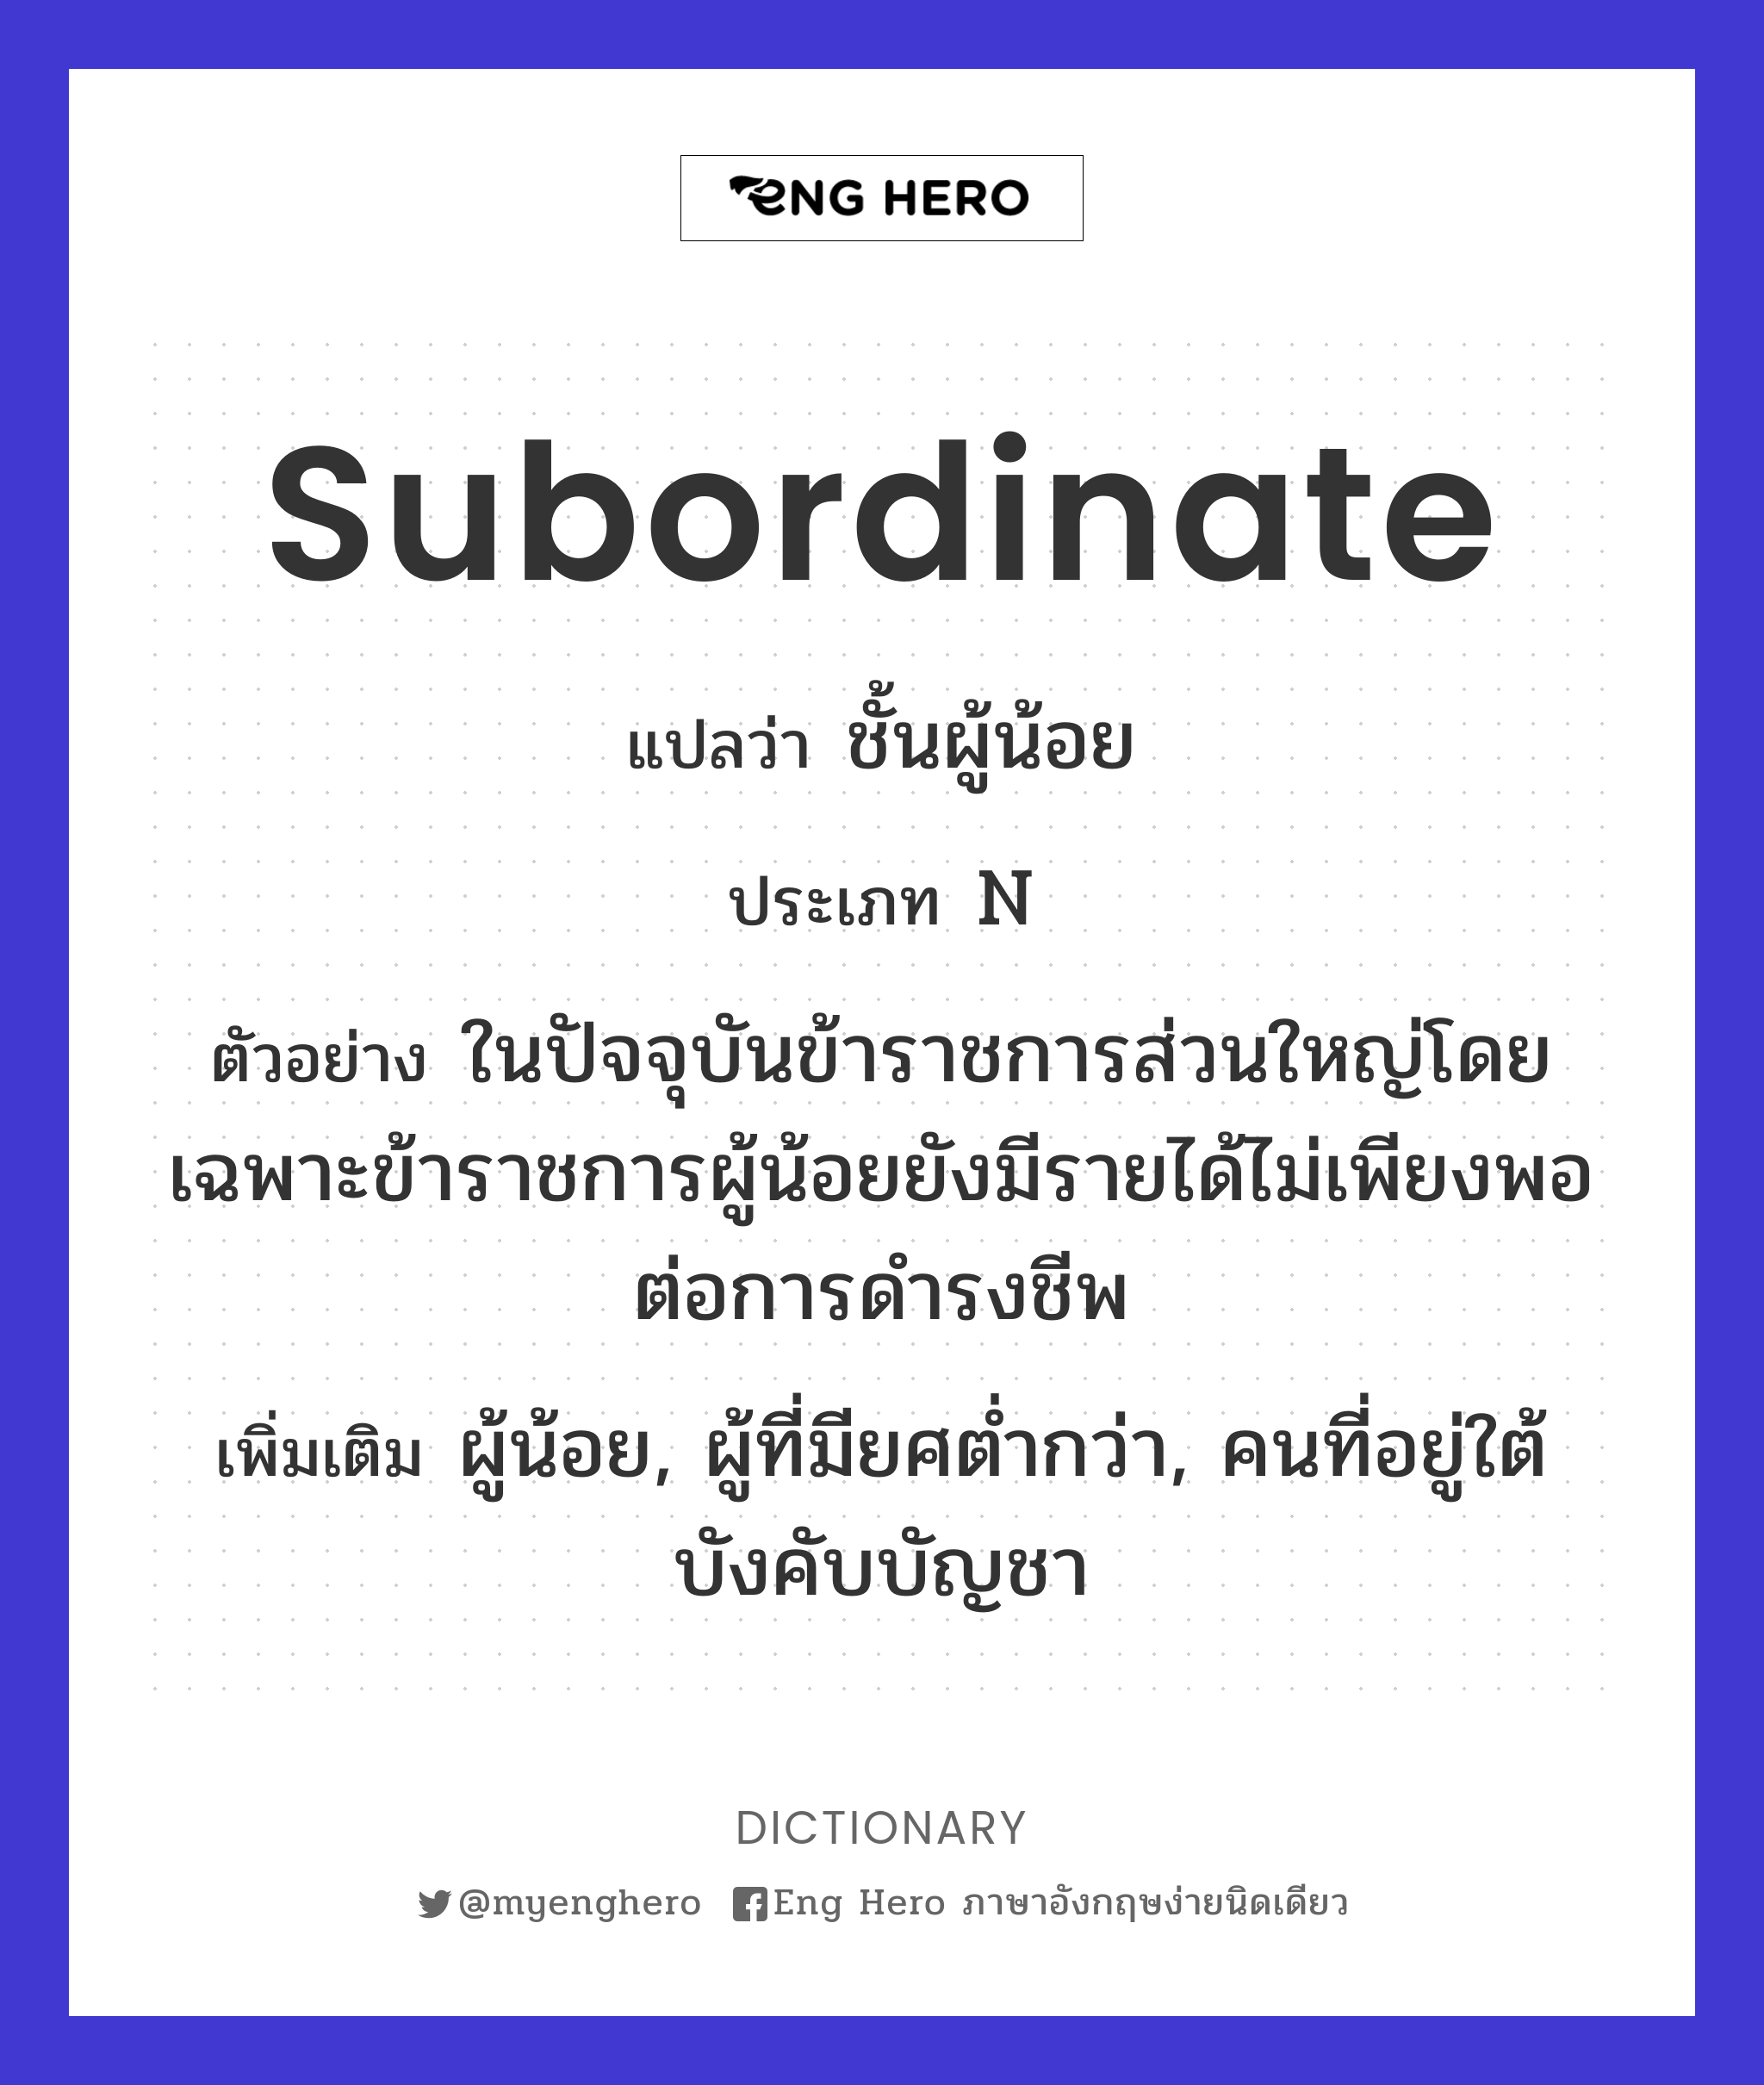 subordinate